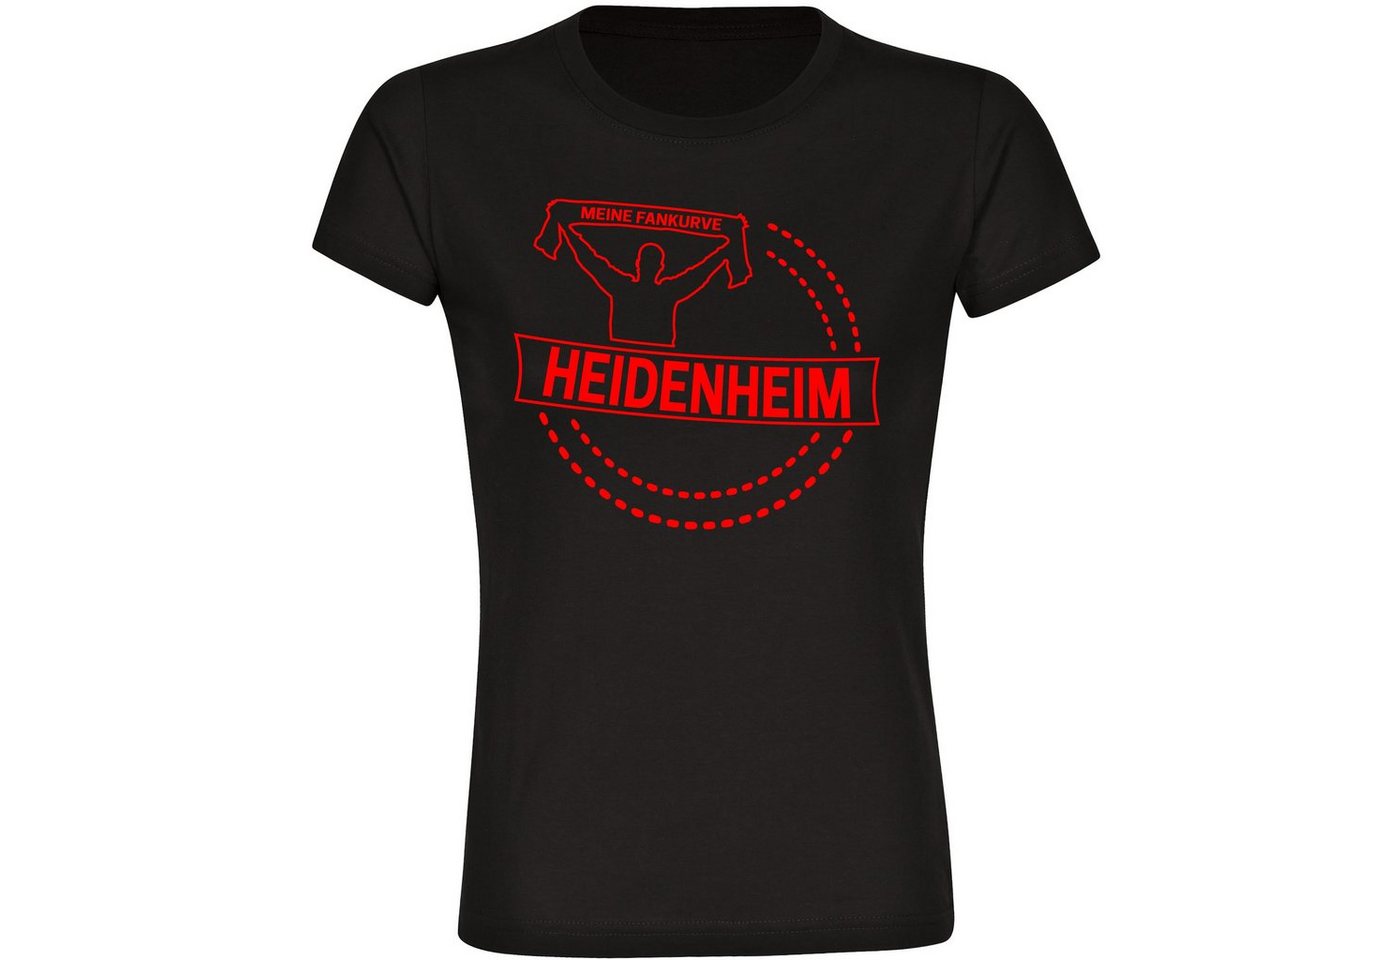 multifanshop T-Shirt Damen Heidenheim - Meine Fankurve - Frauen von multifanshop